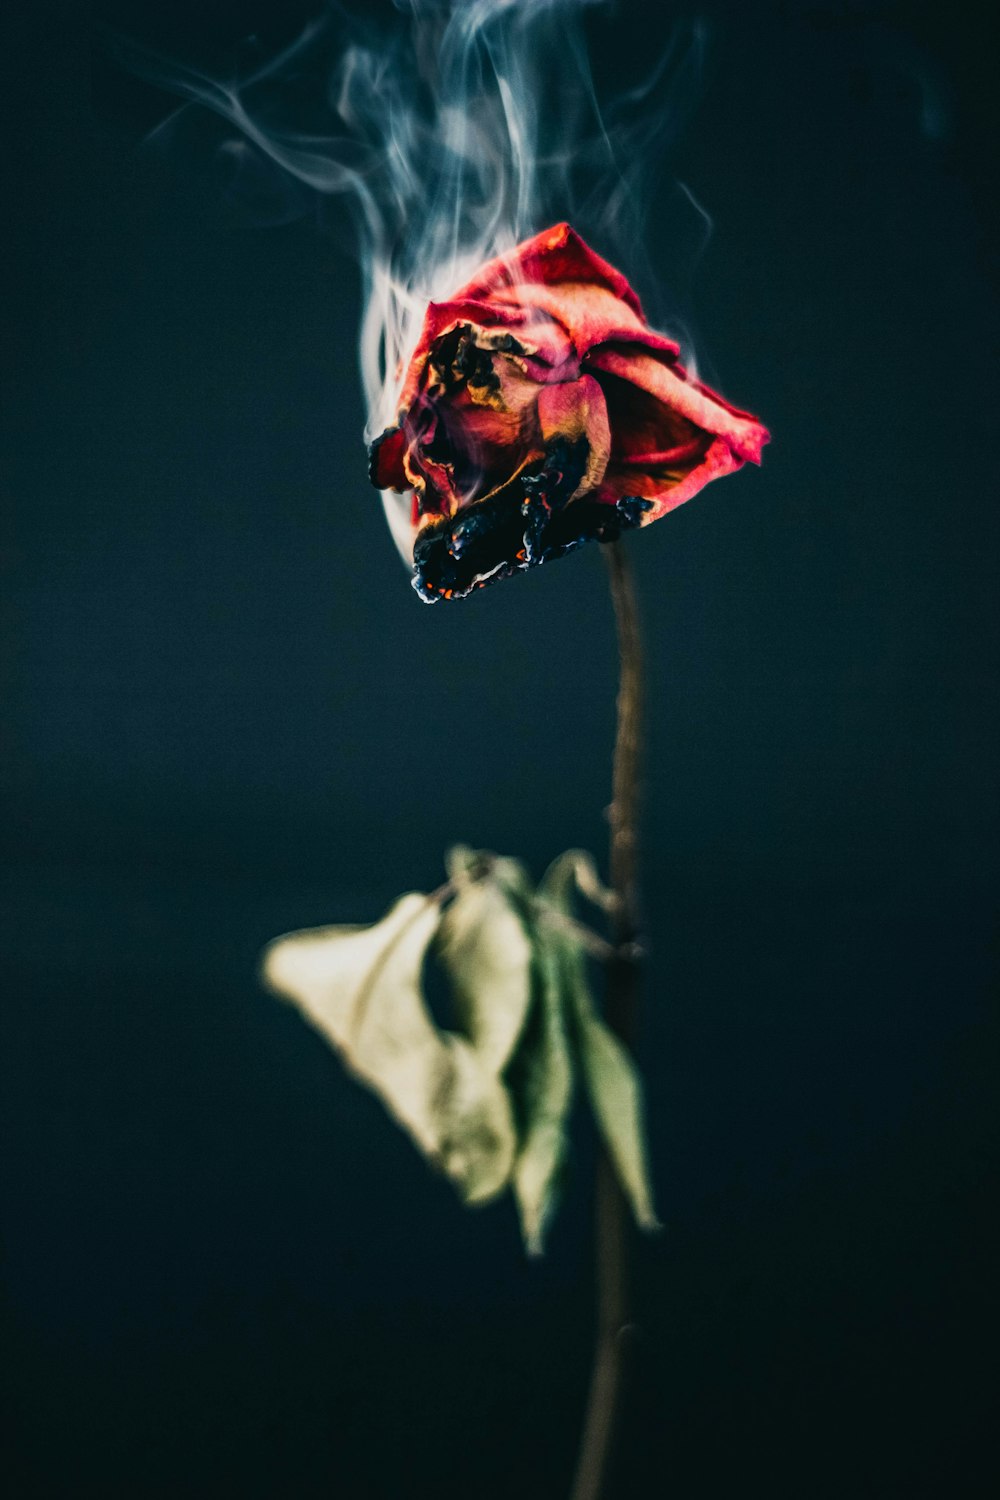 red rose flower burning